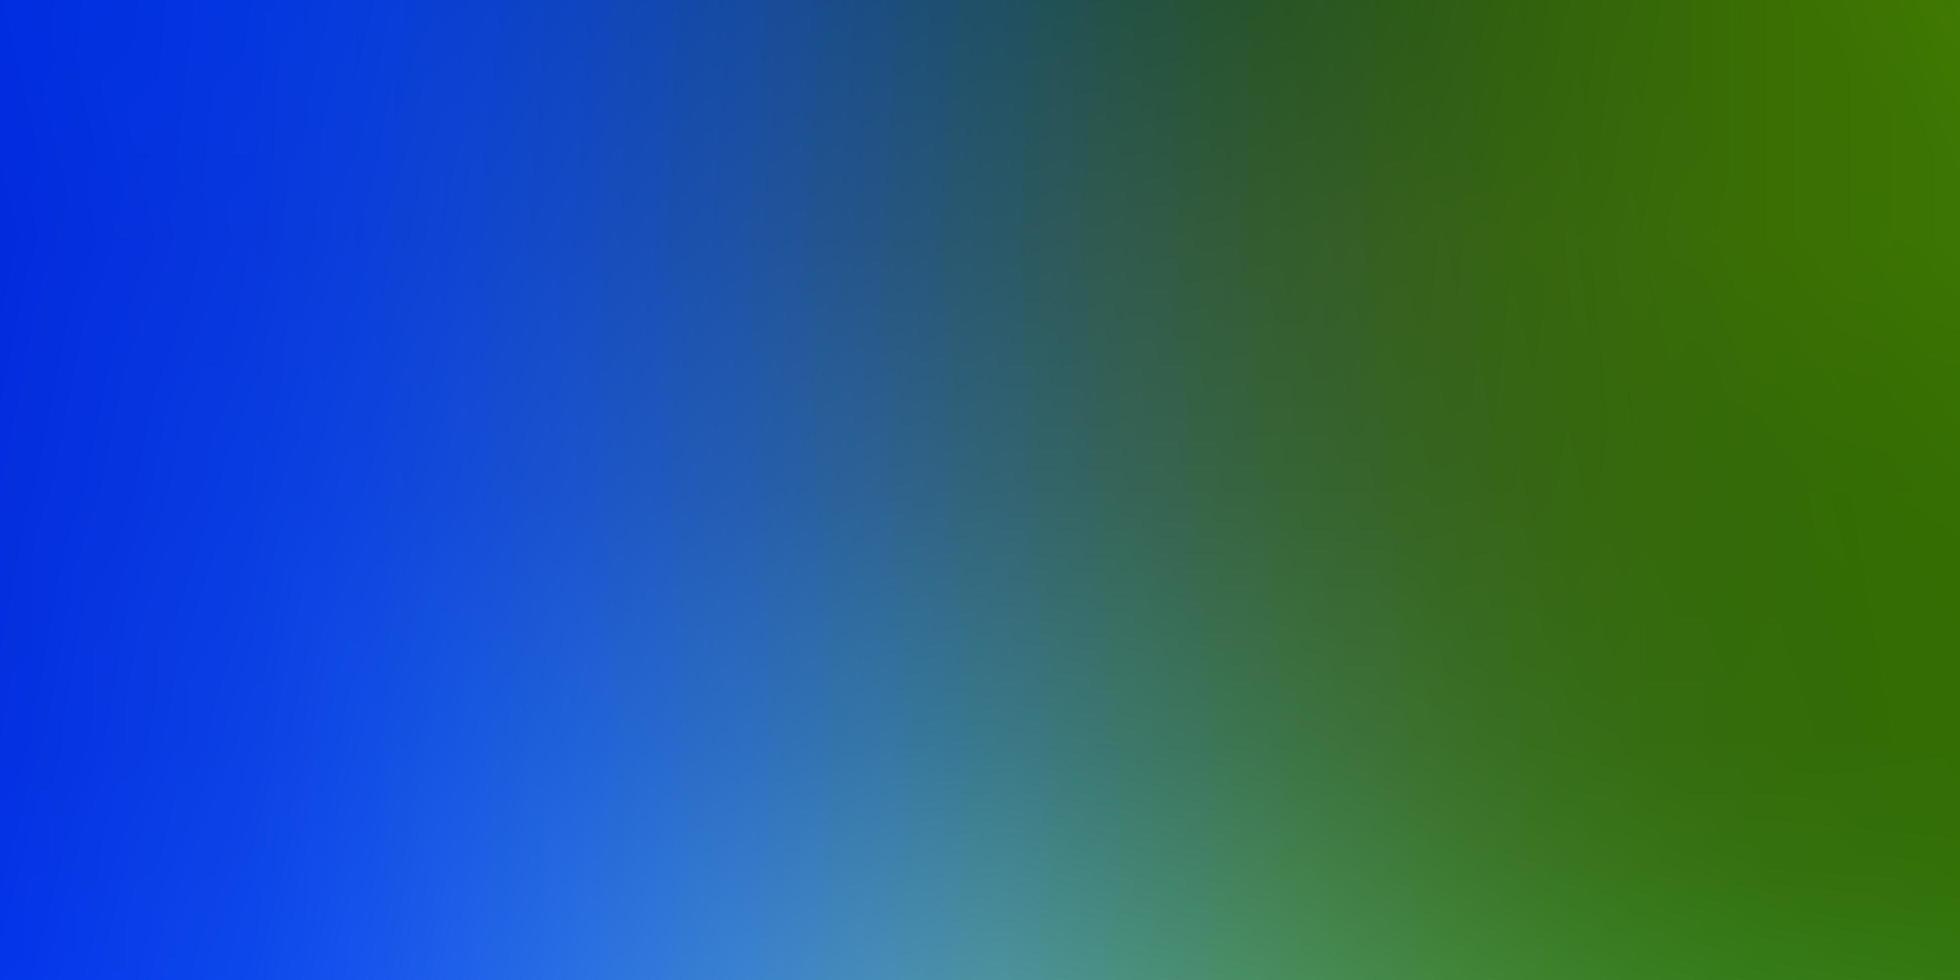 mise en page floue abstraite vecteur bleu clair, vert.